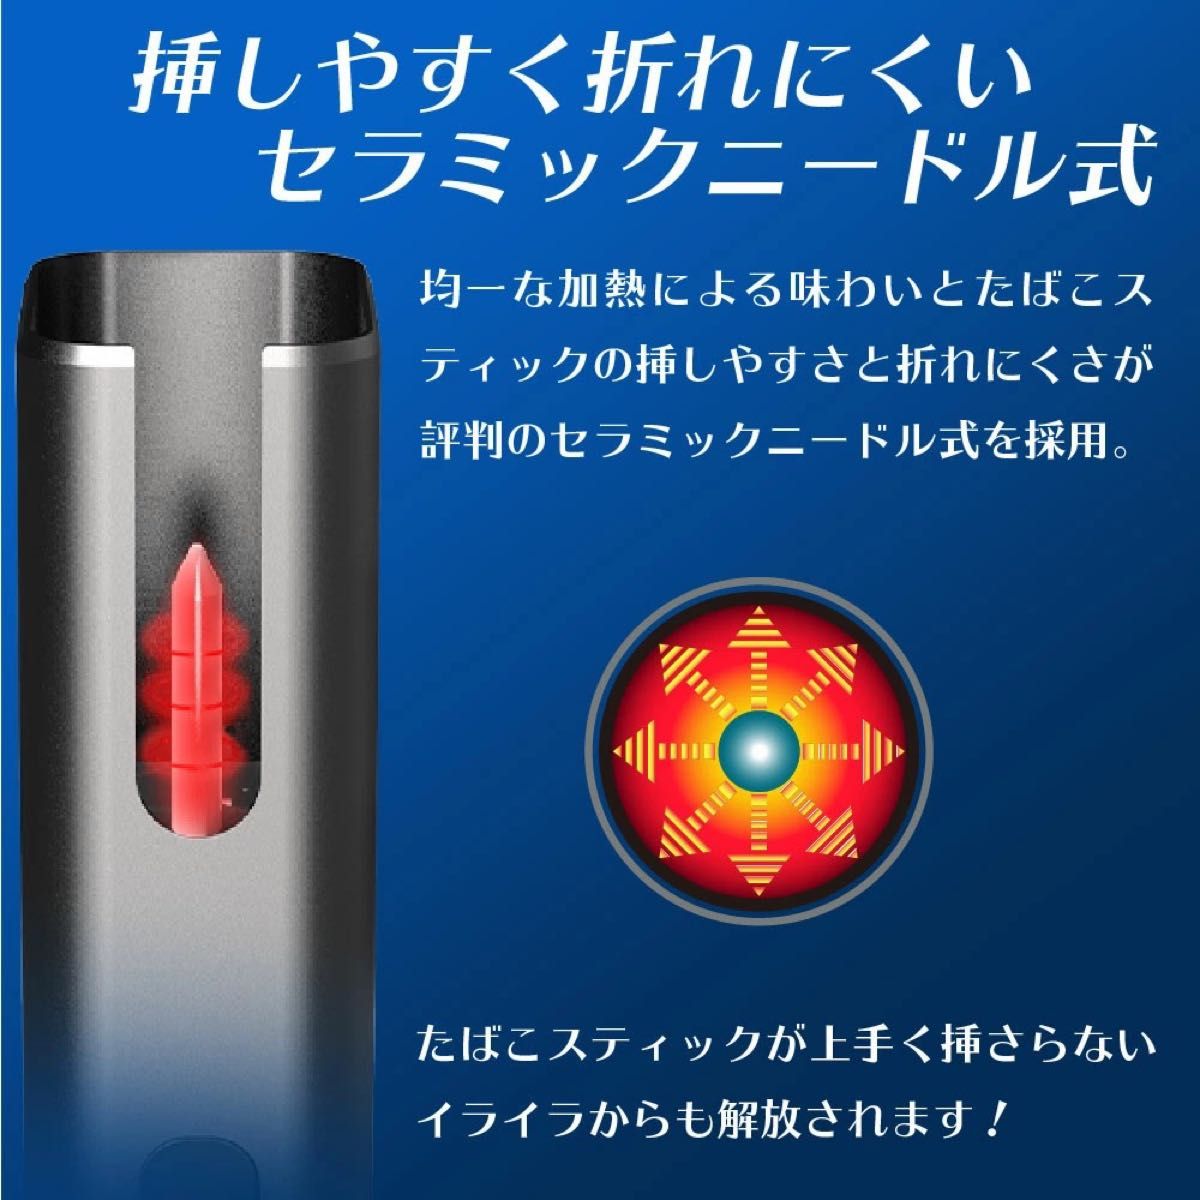 【最終価格】iQOS アイコス 互換機 急速充電 コンパクト 黒 赤 新品